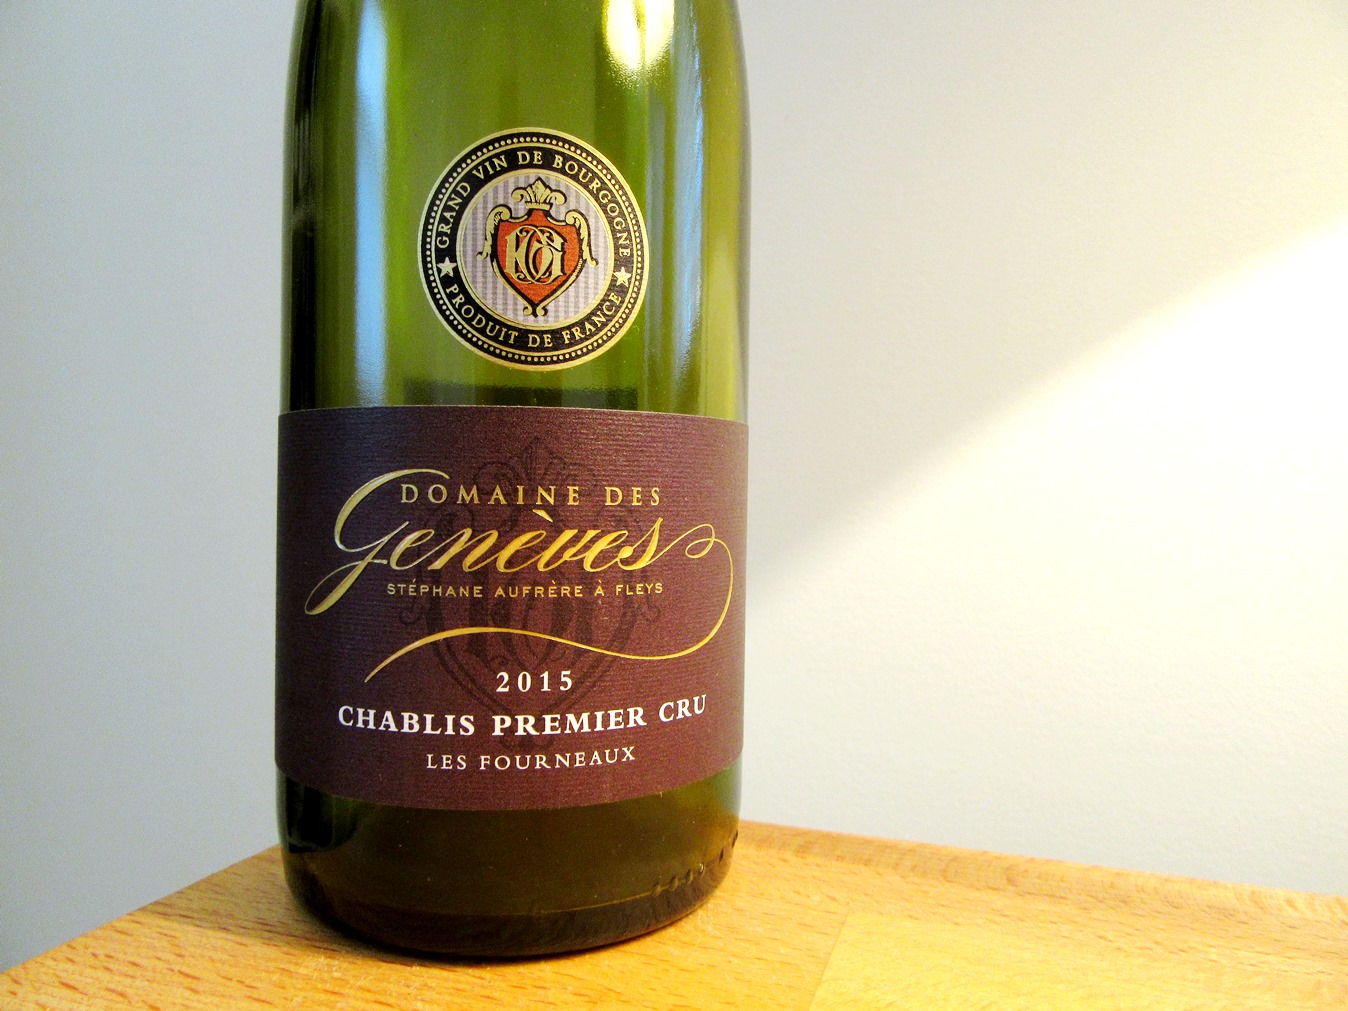 Domaine des Genèves, Les Fourneaux Premier Crus Chablis 2015, Burgundy, France, Wine Casual